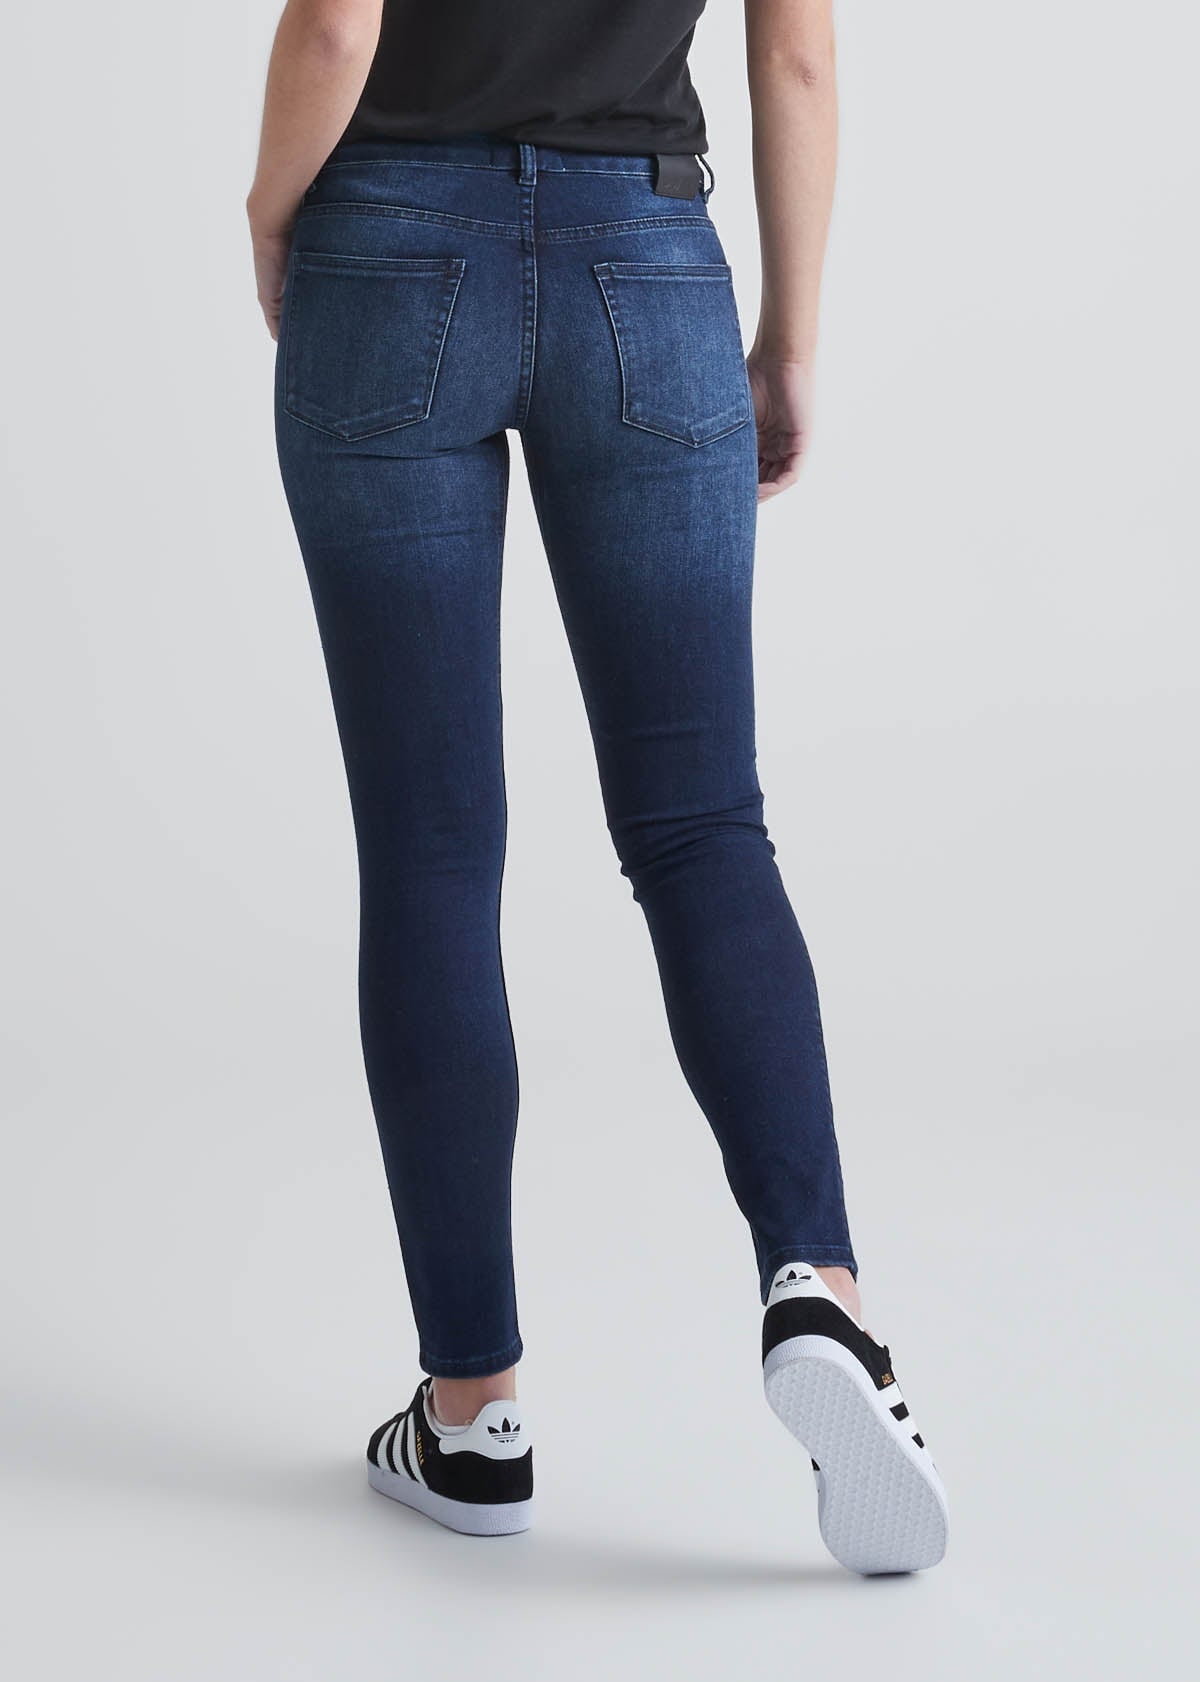 Women's Dark Blue Jeans